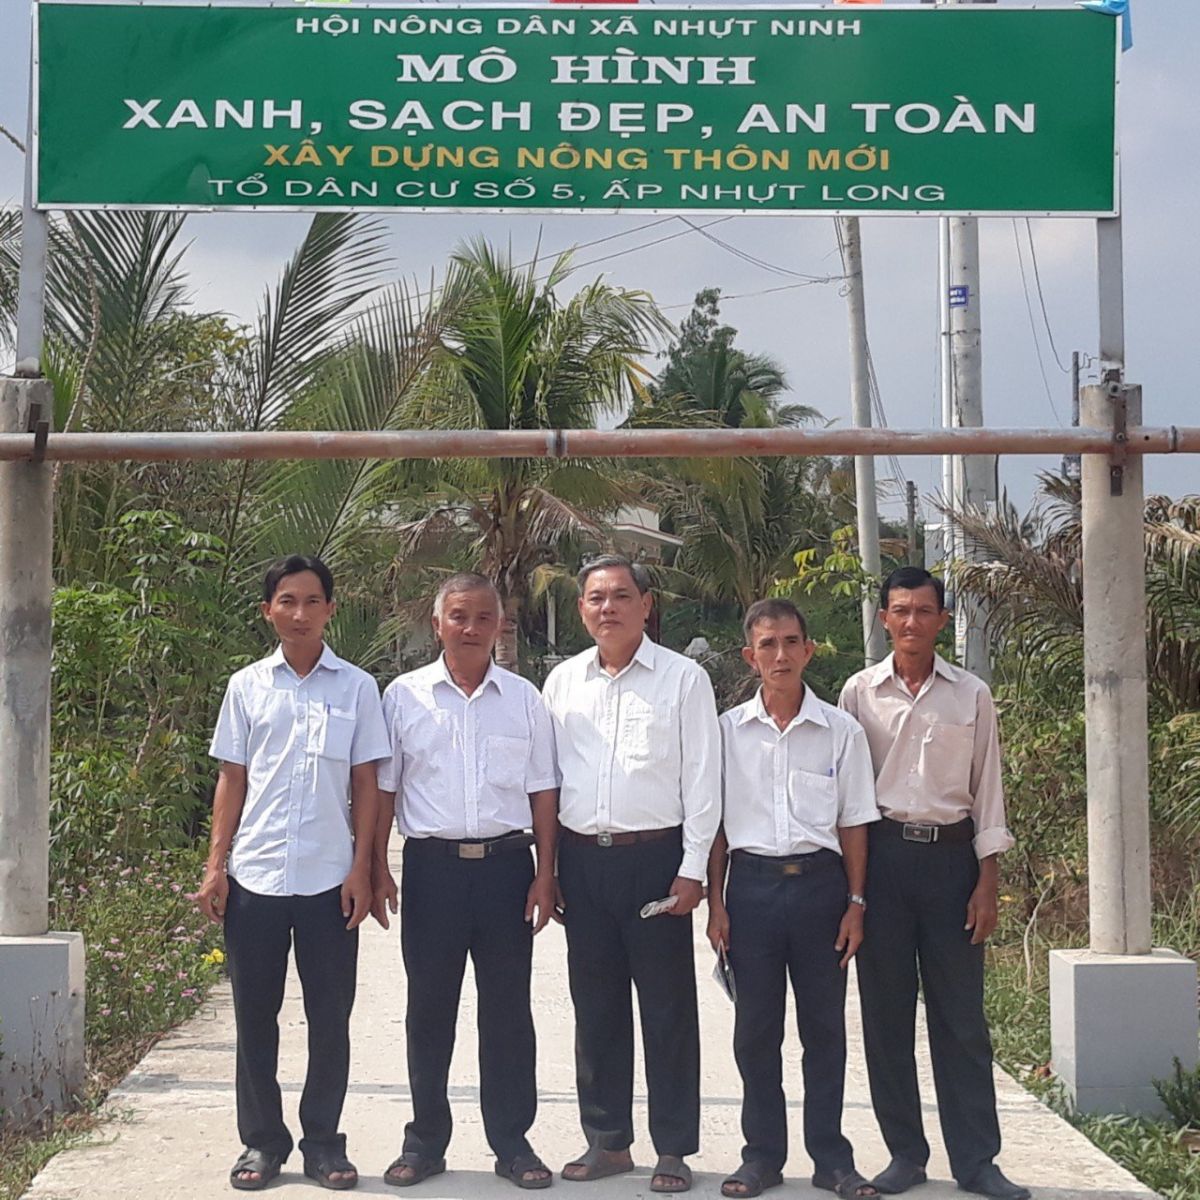 Mô hình Xanh, sạch, đẹp, an toàn của Hội Nông dân xã Nhựt Ninh góp phần xây dựng nông thôn mới